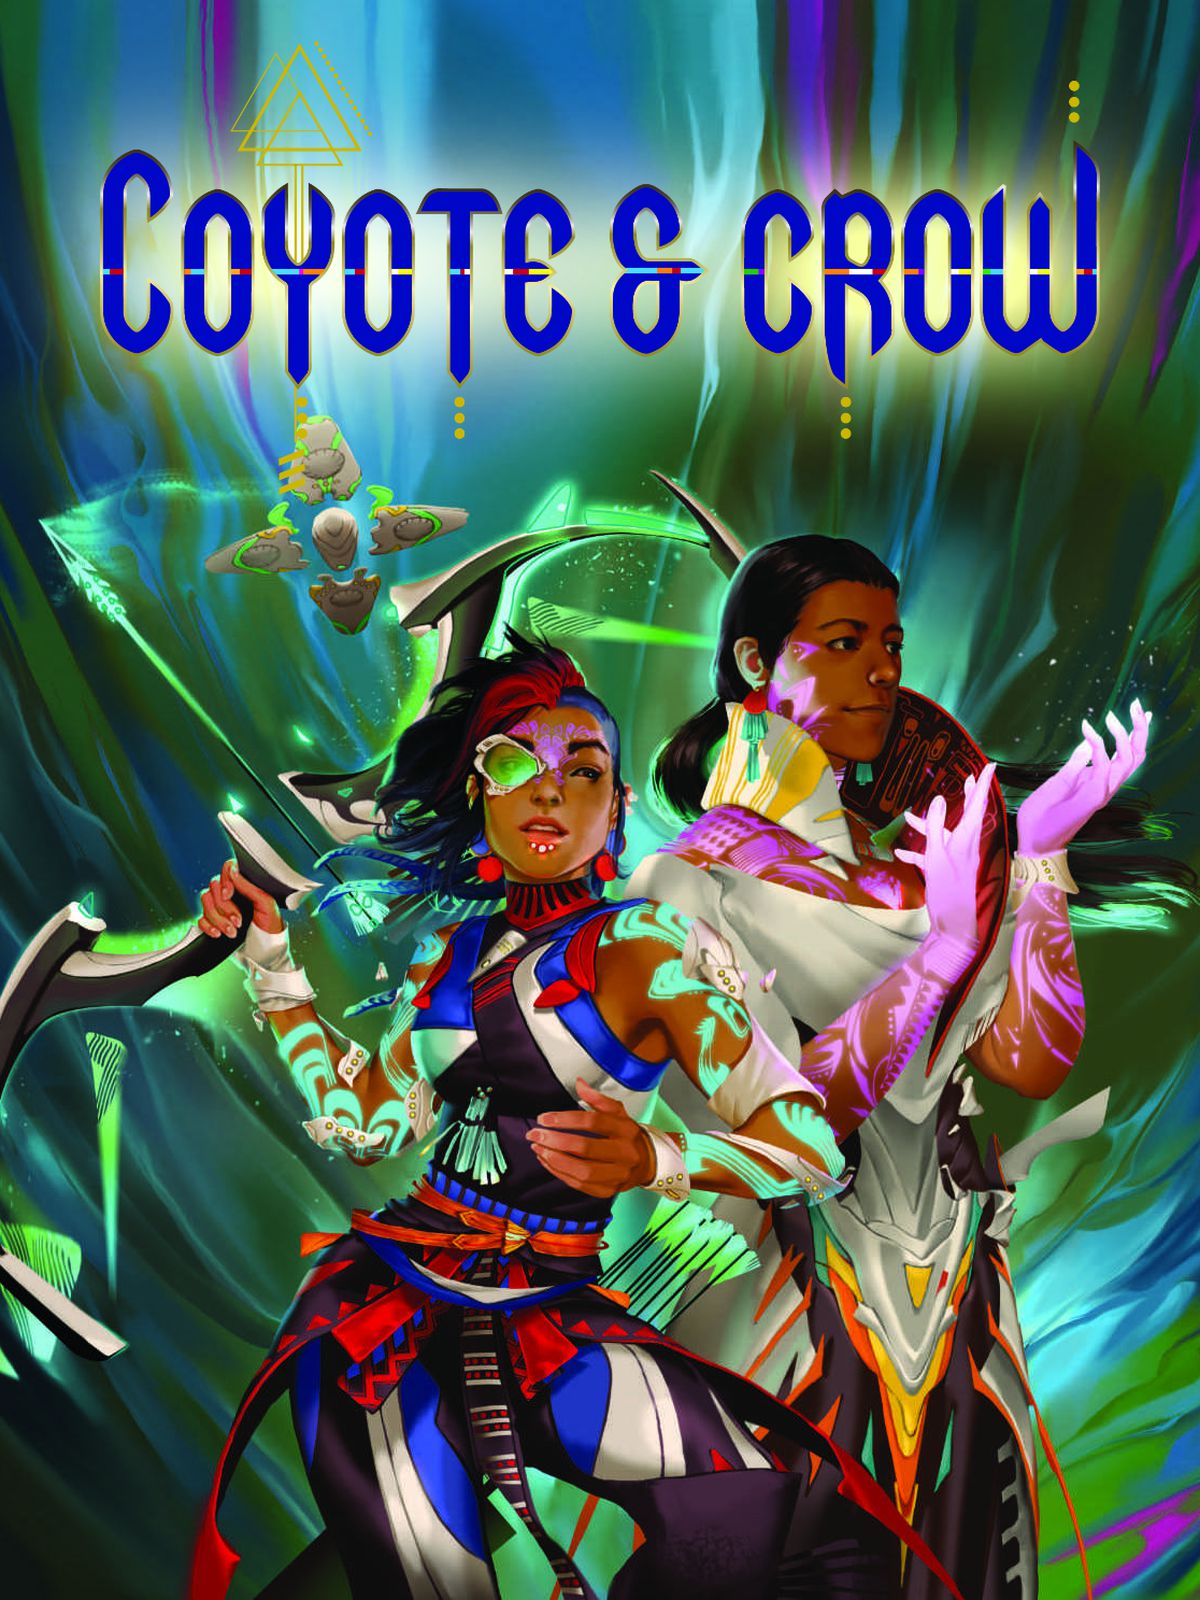 Copertina di Coyote & Crow che mostra i discendenti dei nativi americani precolombiani vestiti con un'armatura colorata.